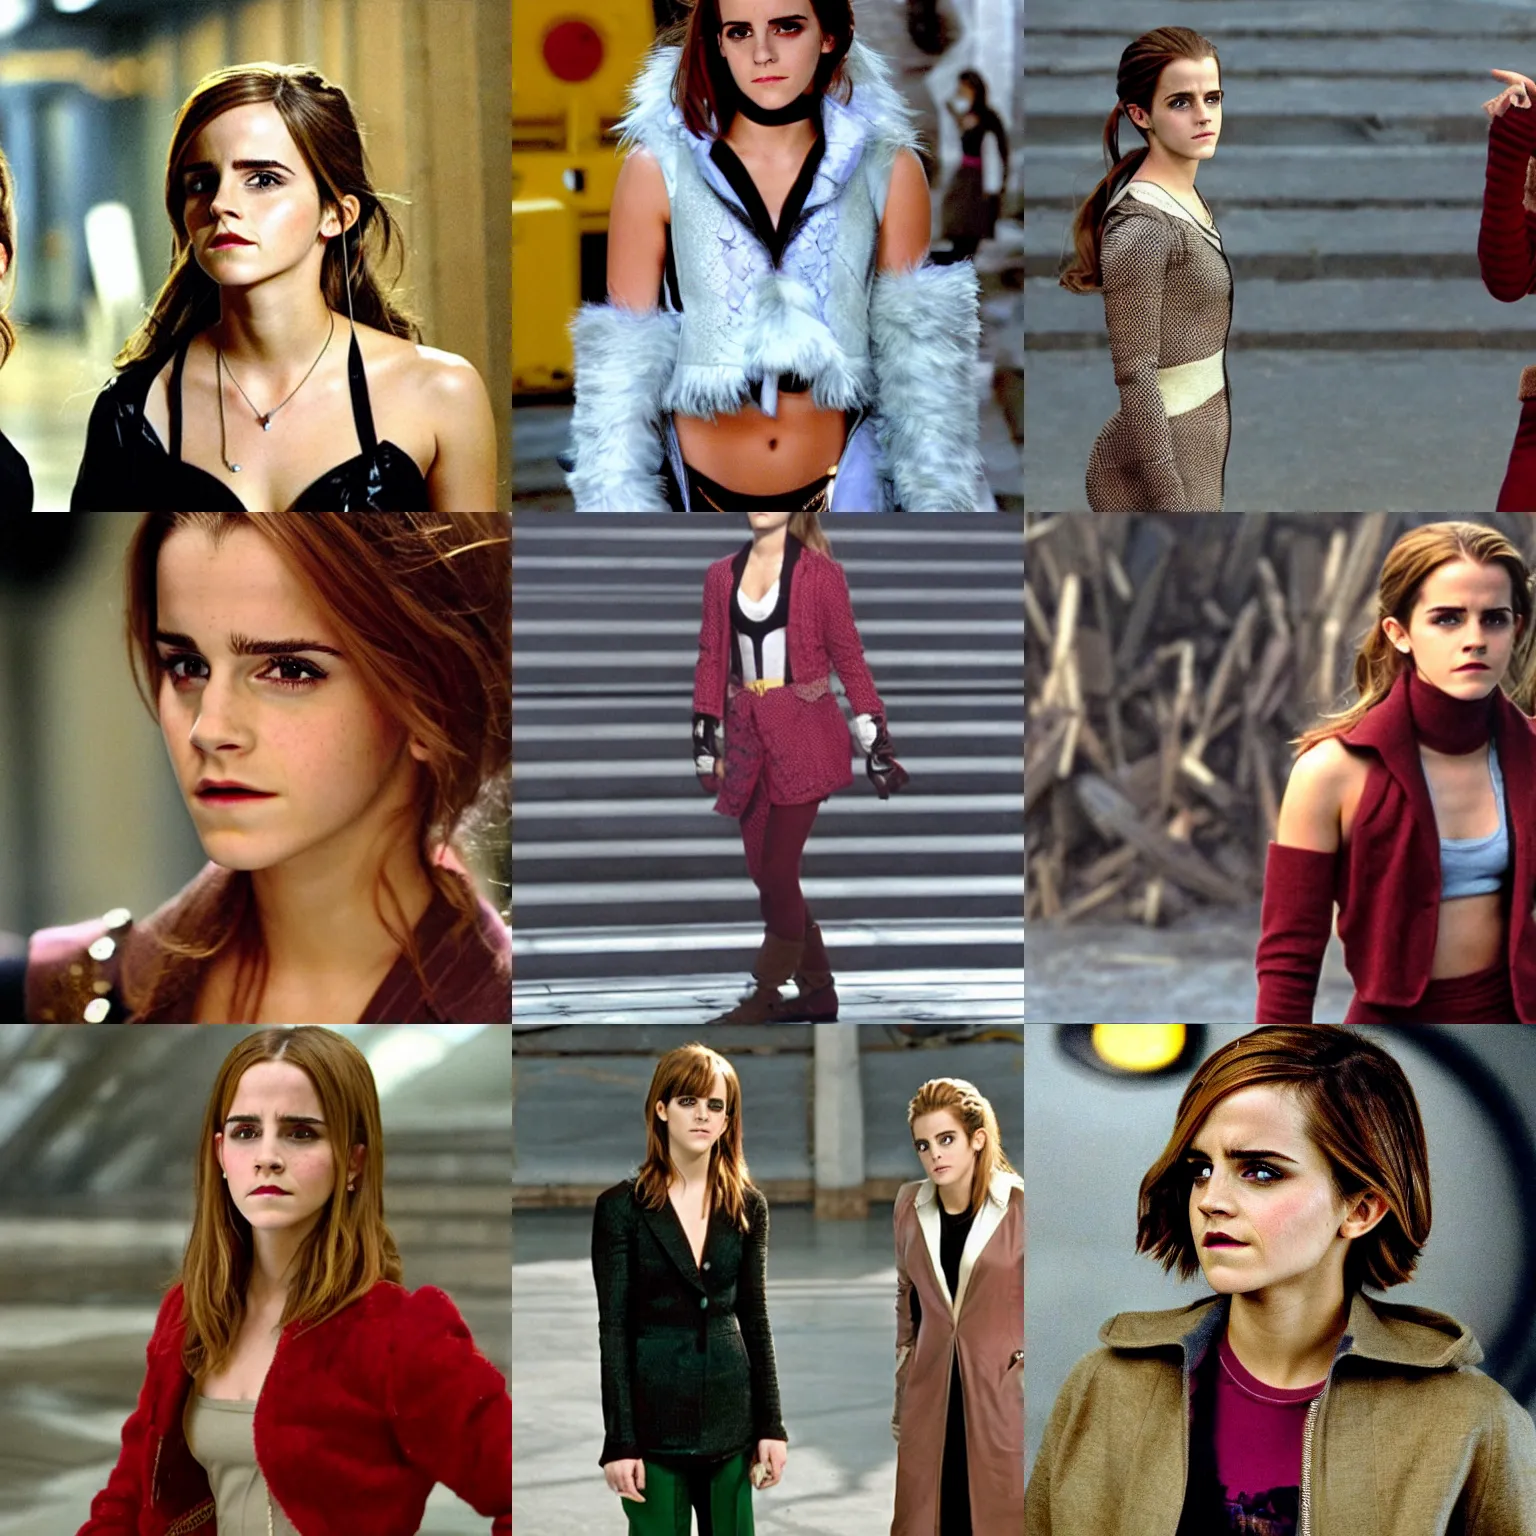 Prompt: Movie still of Emma Watson in Zoolander